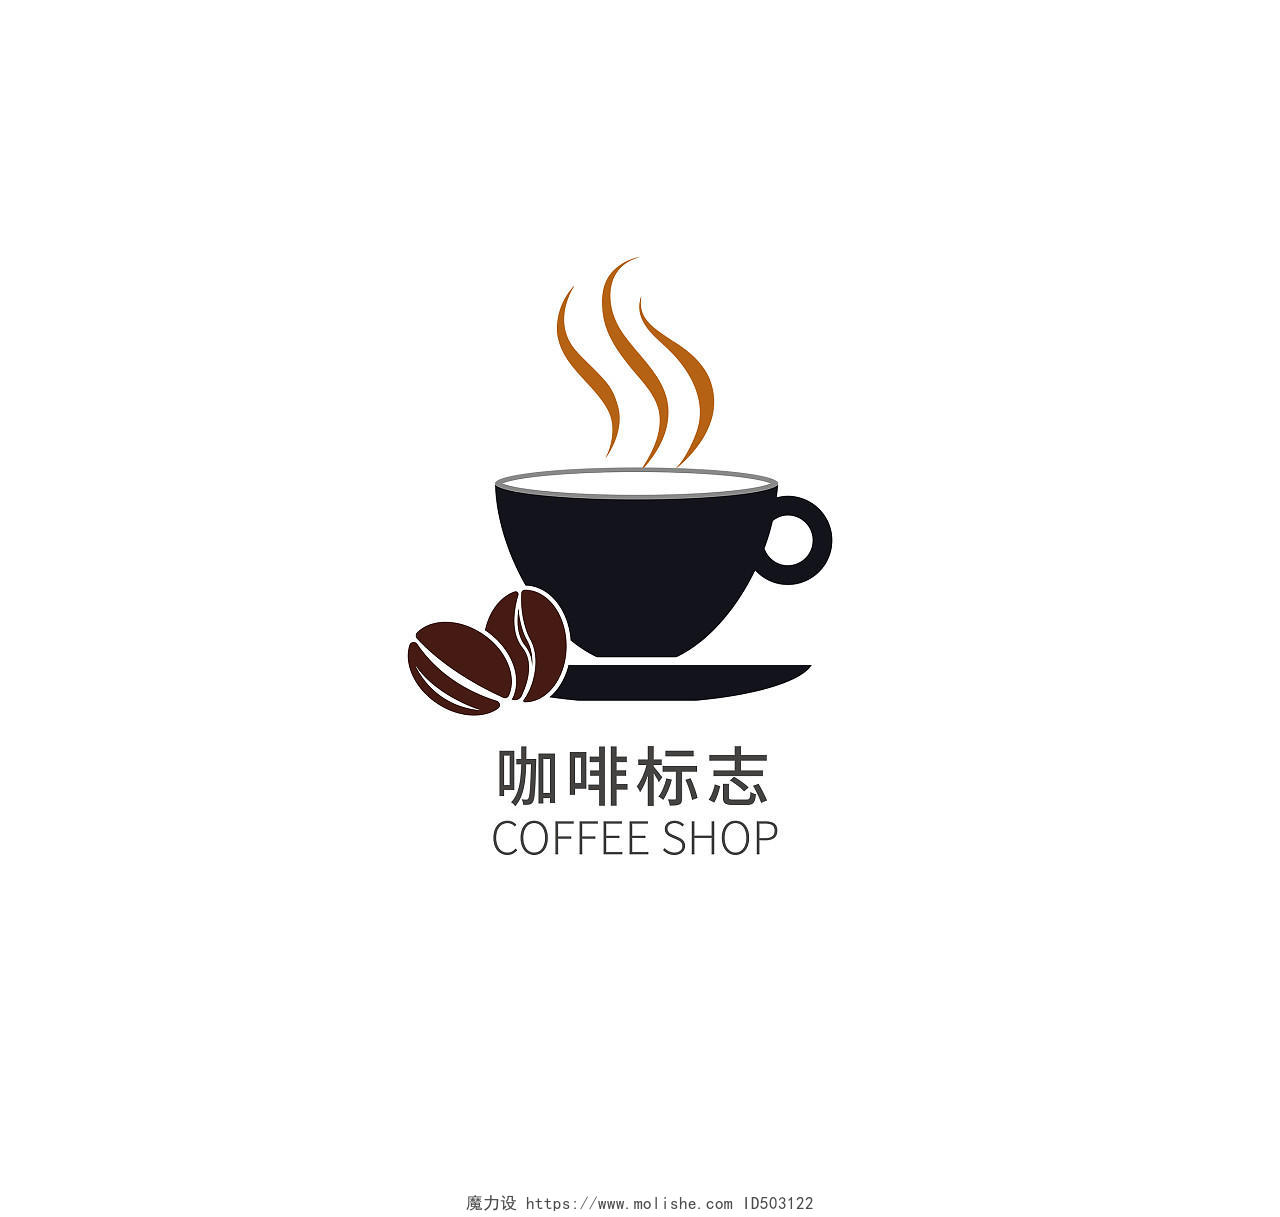 咖啡公司标志咖啡店铺LOGO标识标志设计logo设计咖啡logo